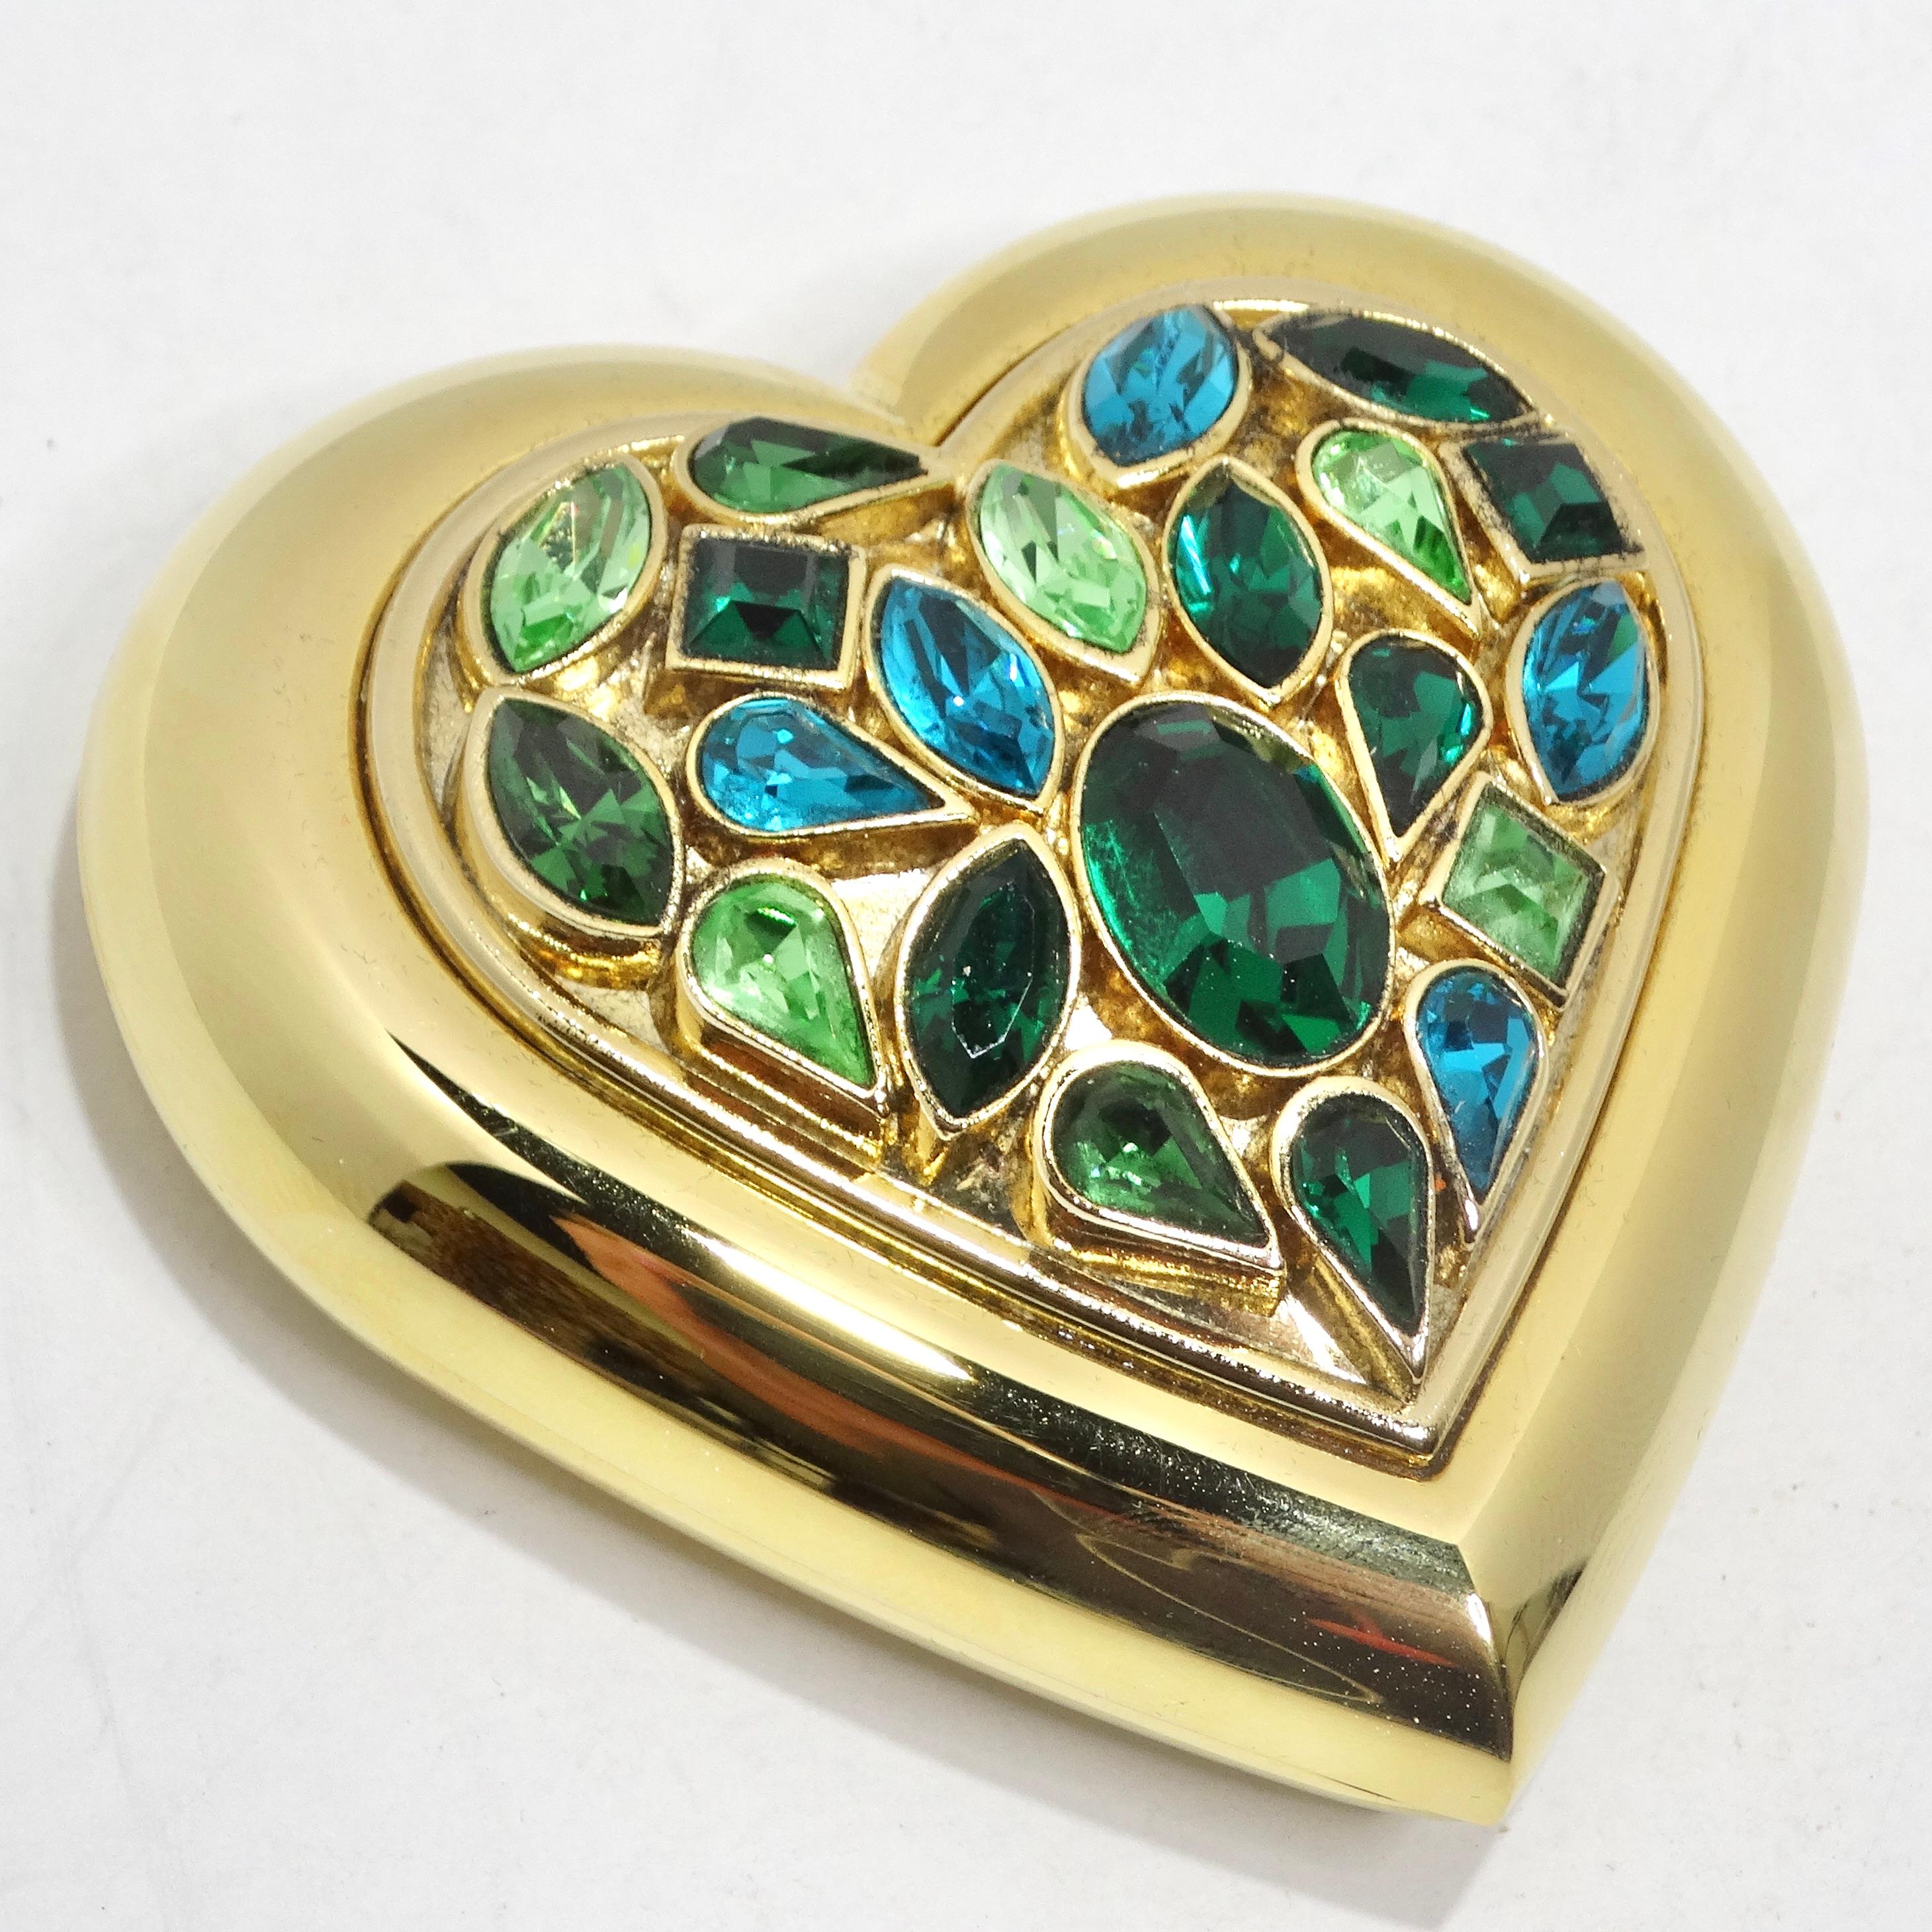 Offrez-vous une élégance vintage avec le miroir compact en forme de cœur incrusté de pierres précieuses Yves Saint Laurent des années 1980. Ce miroir de courtoisie plaqué or jaune est conçu en forme de cœur et comporte une pléthore de pierres